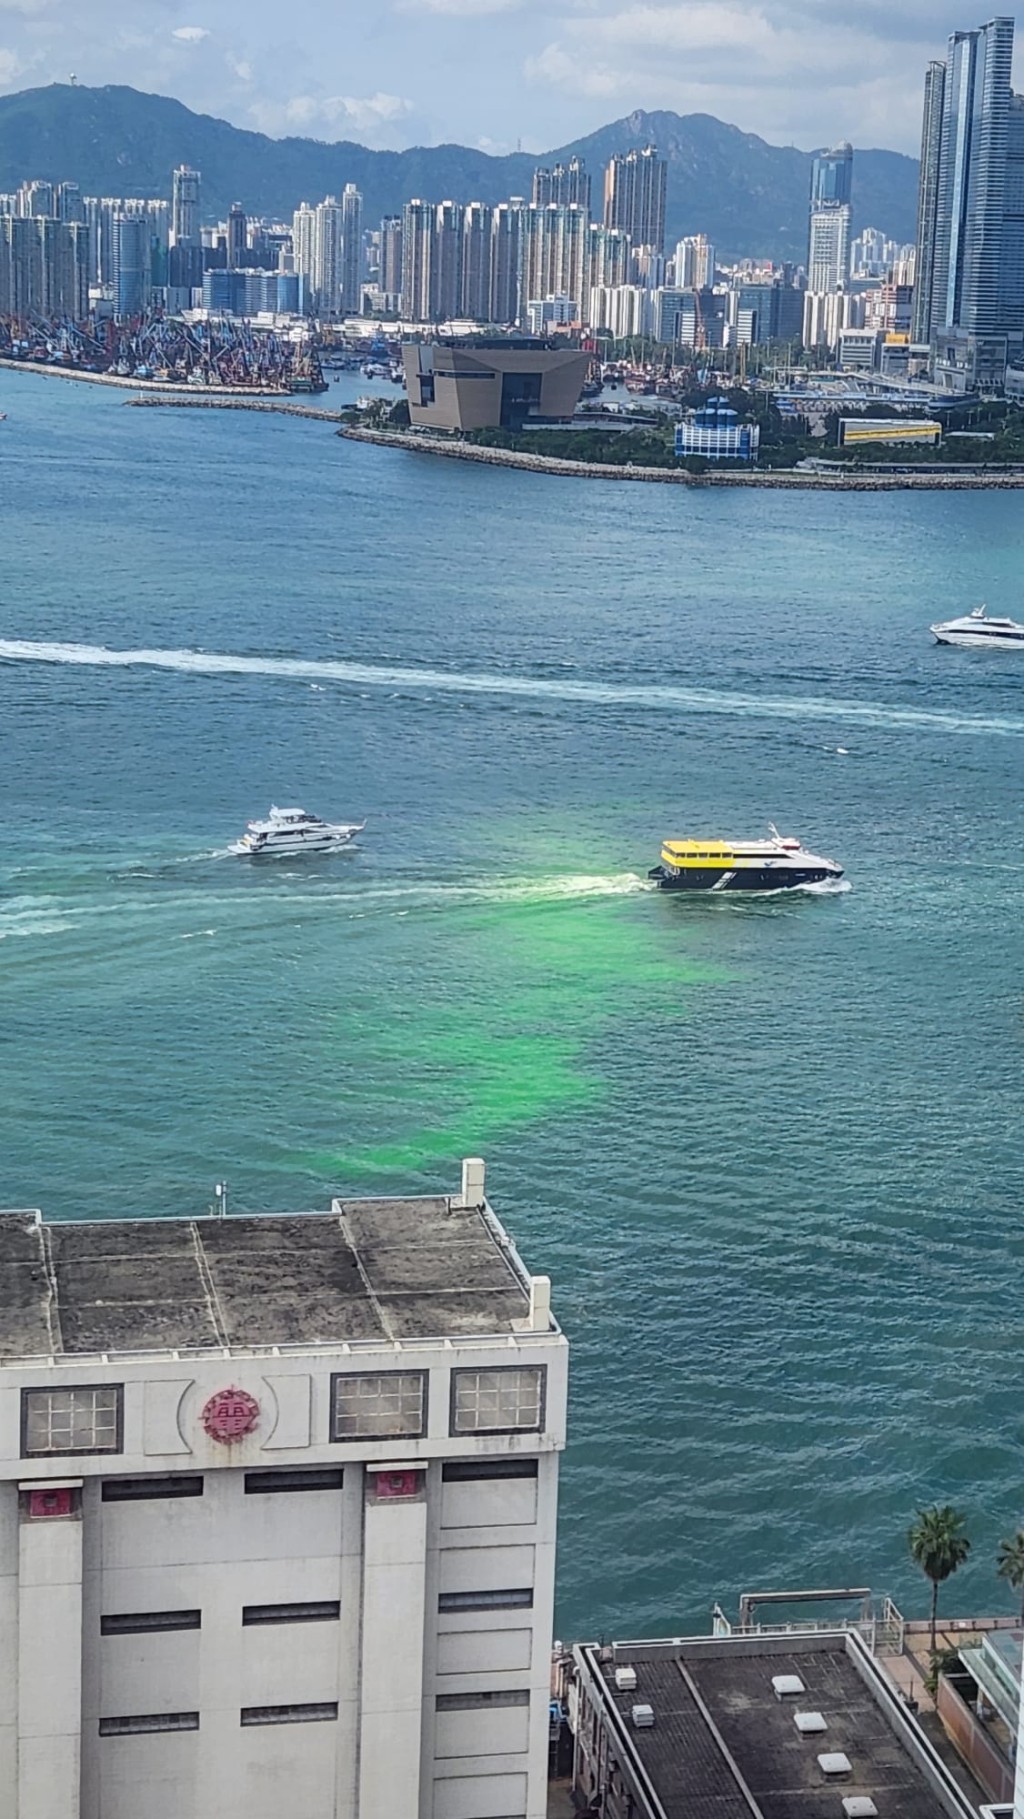 上周五有一片螢光綠水在上環對開的維港漂浮。